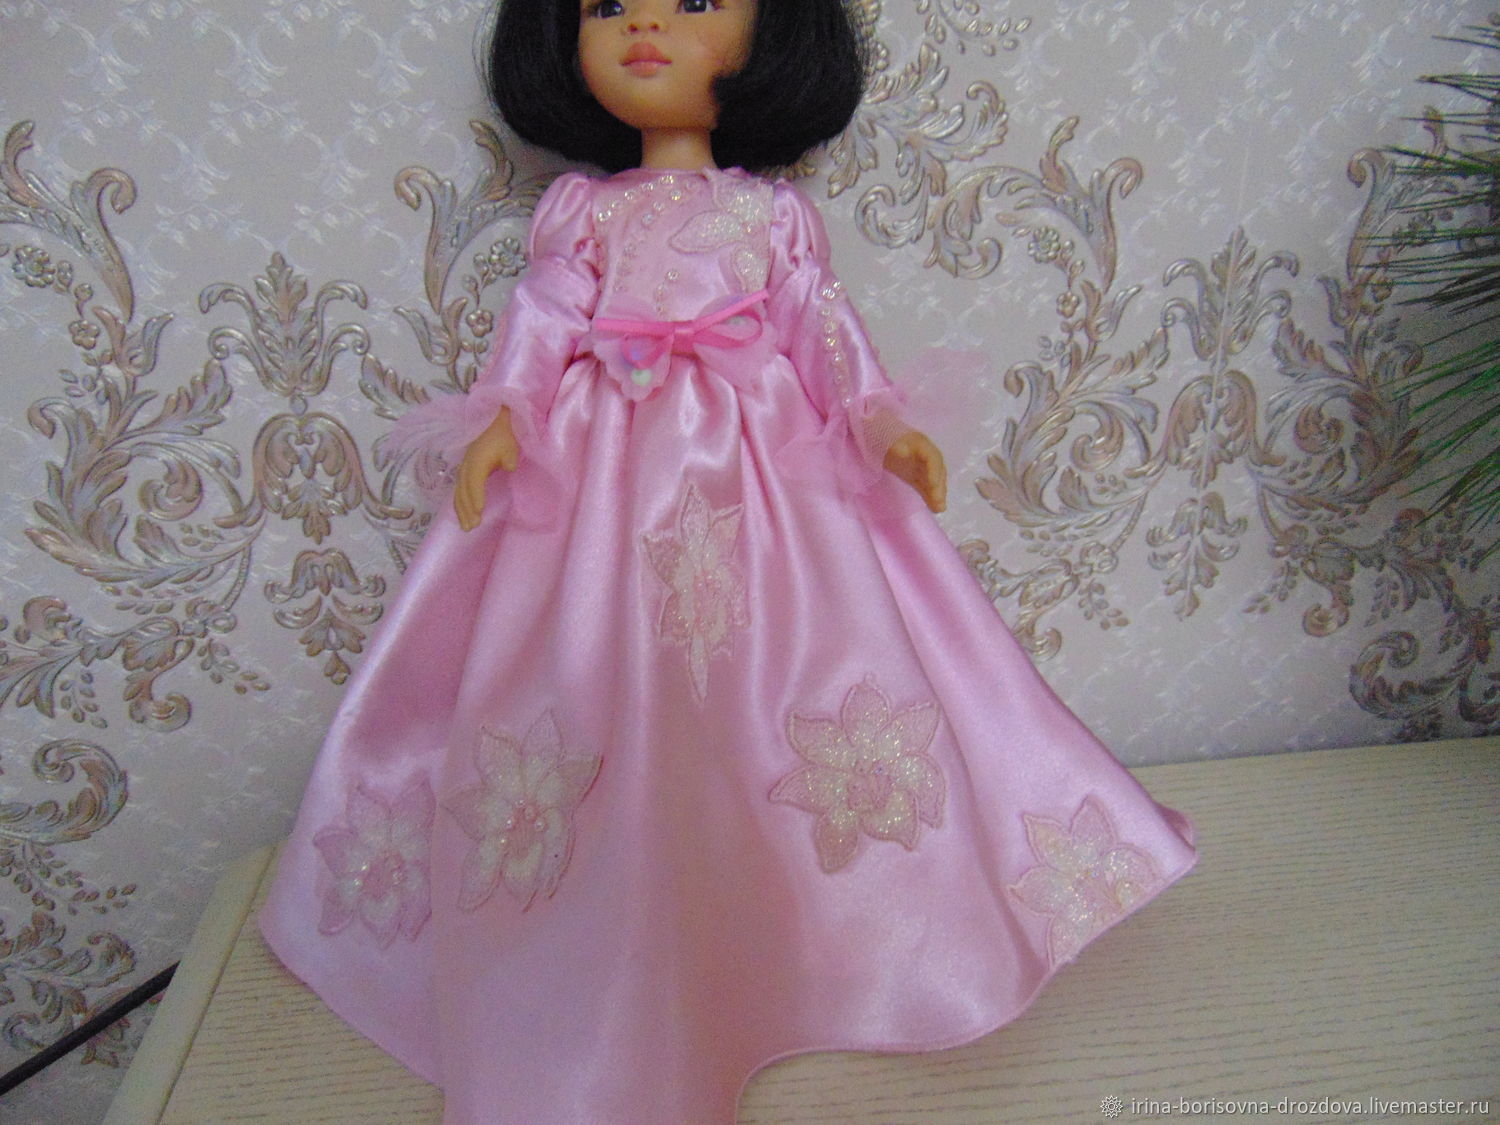  платье бальное розовое, Одежда для кукол, Омск,  Фото №1